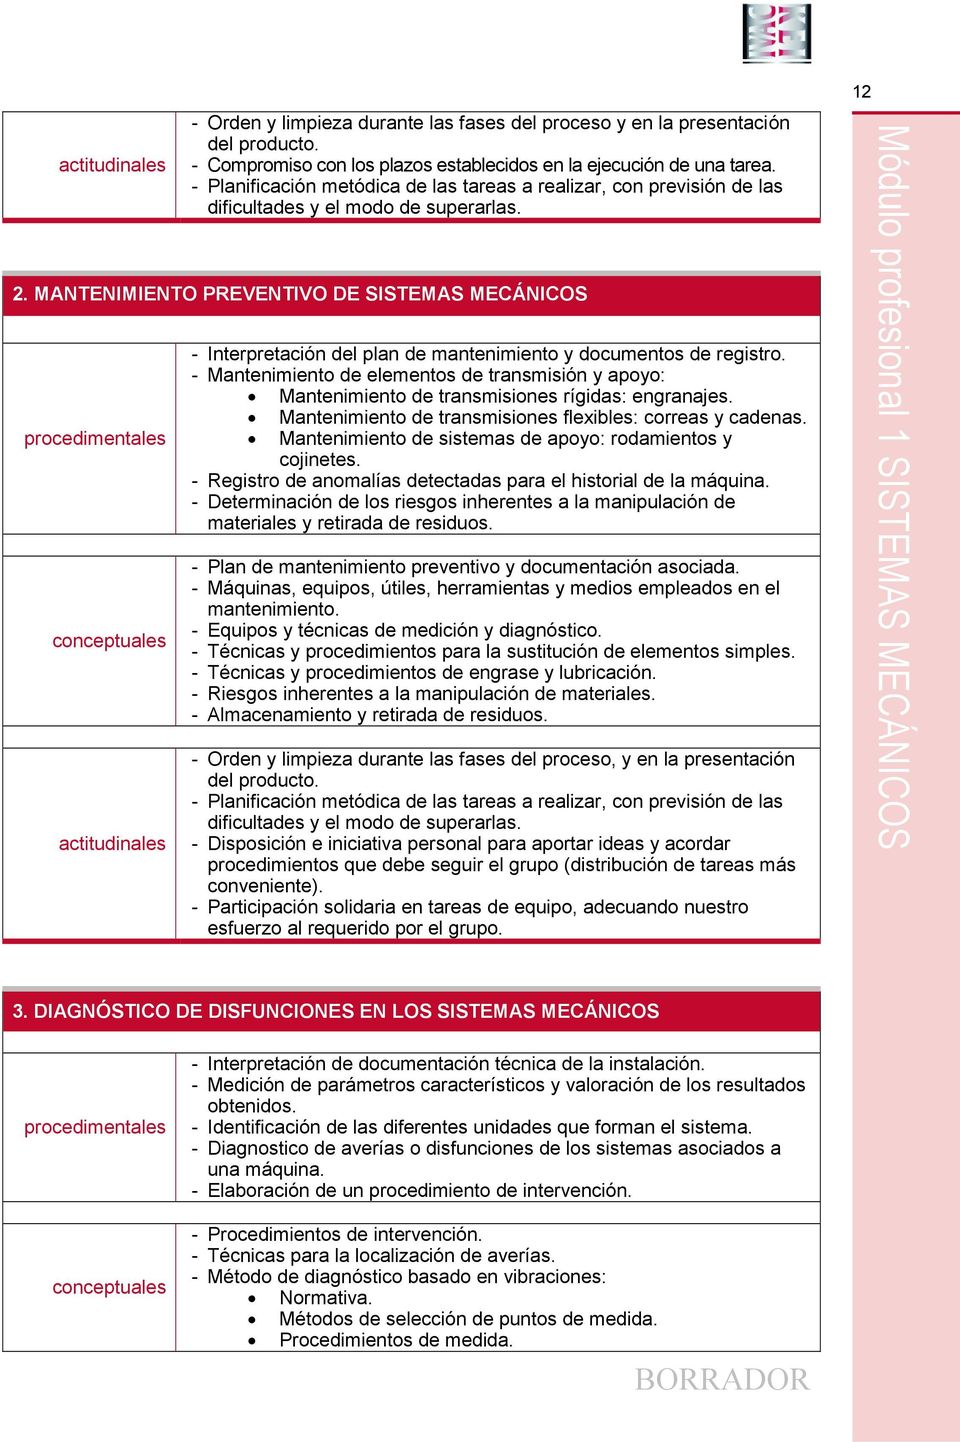 MANTENIMIENTO PREVENTIVO DE SISTEMAS MECÁNICOS - Interpretación del plan de mantenimiento y documentos de registro.